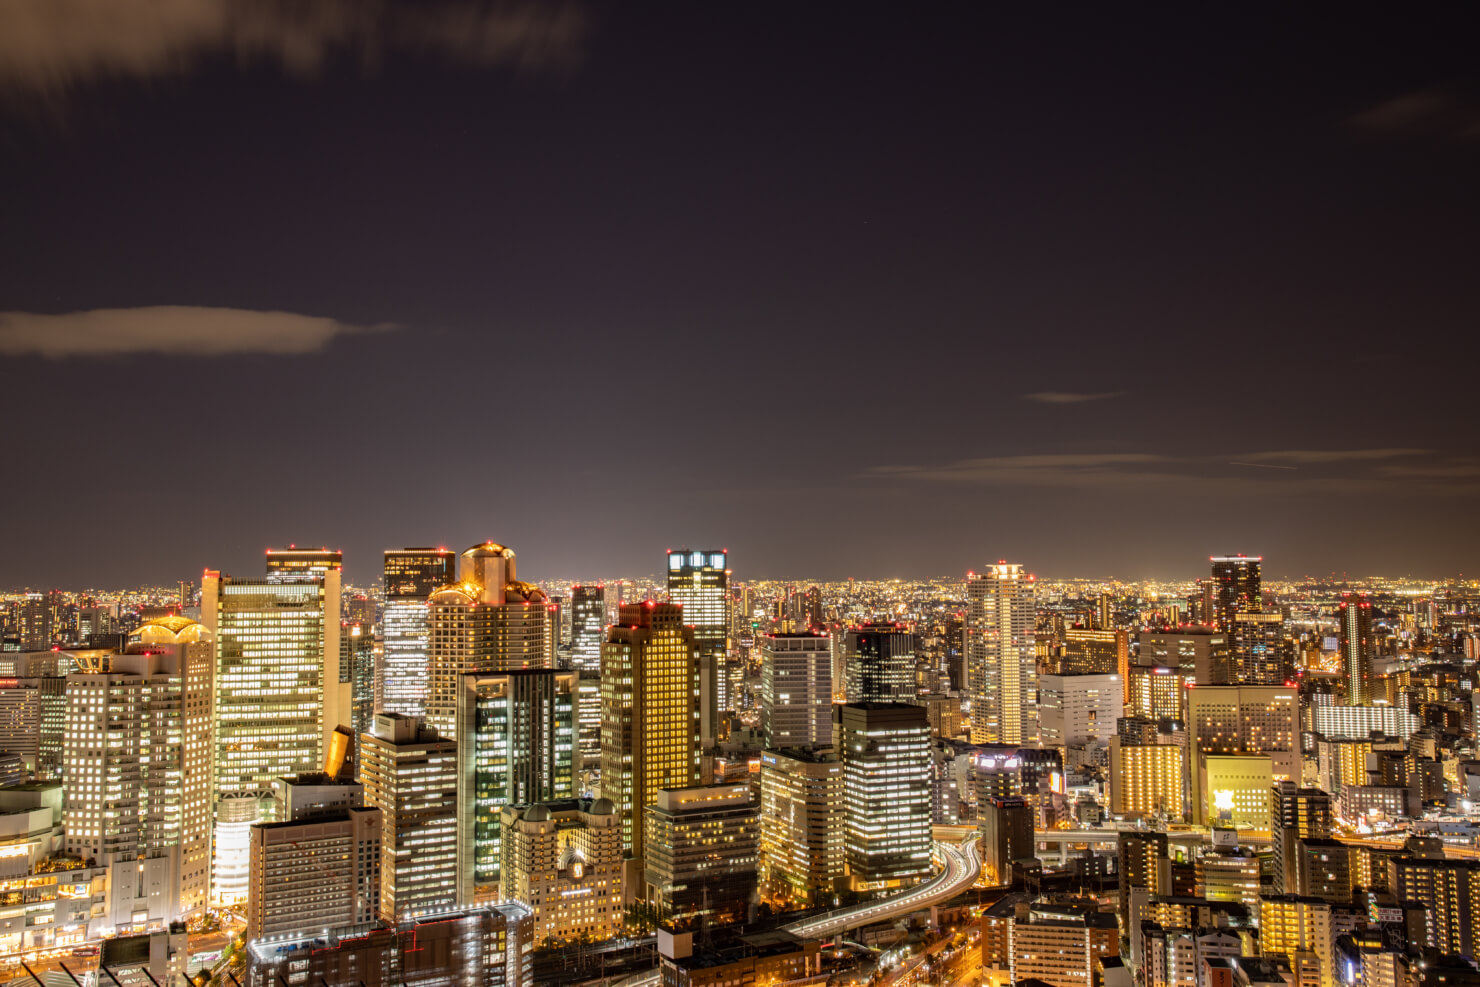 夜景撮影記 梅田スカイビル 空中庭園からの夜景 都市と夜景